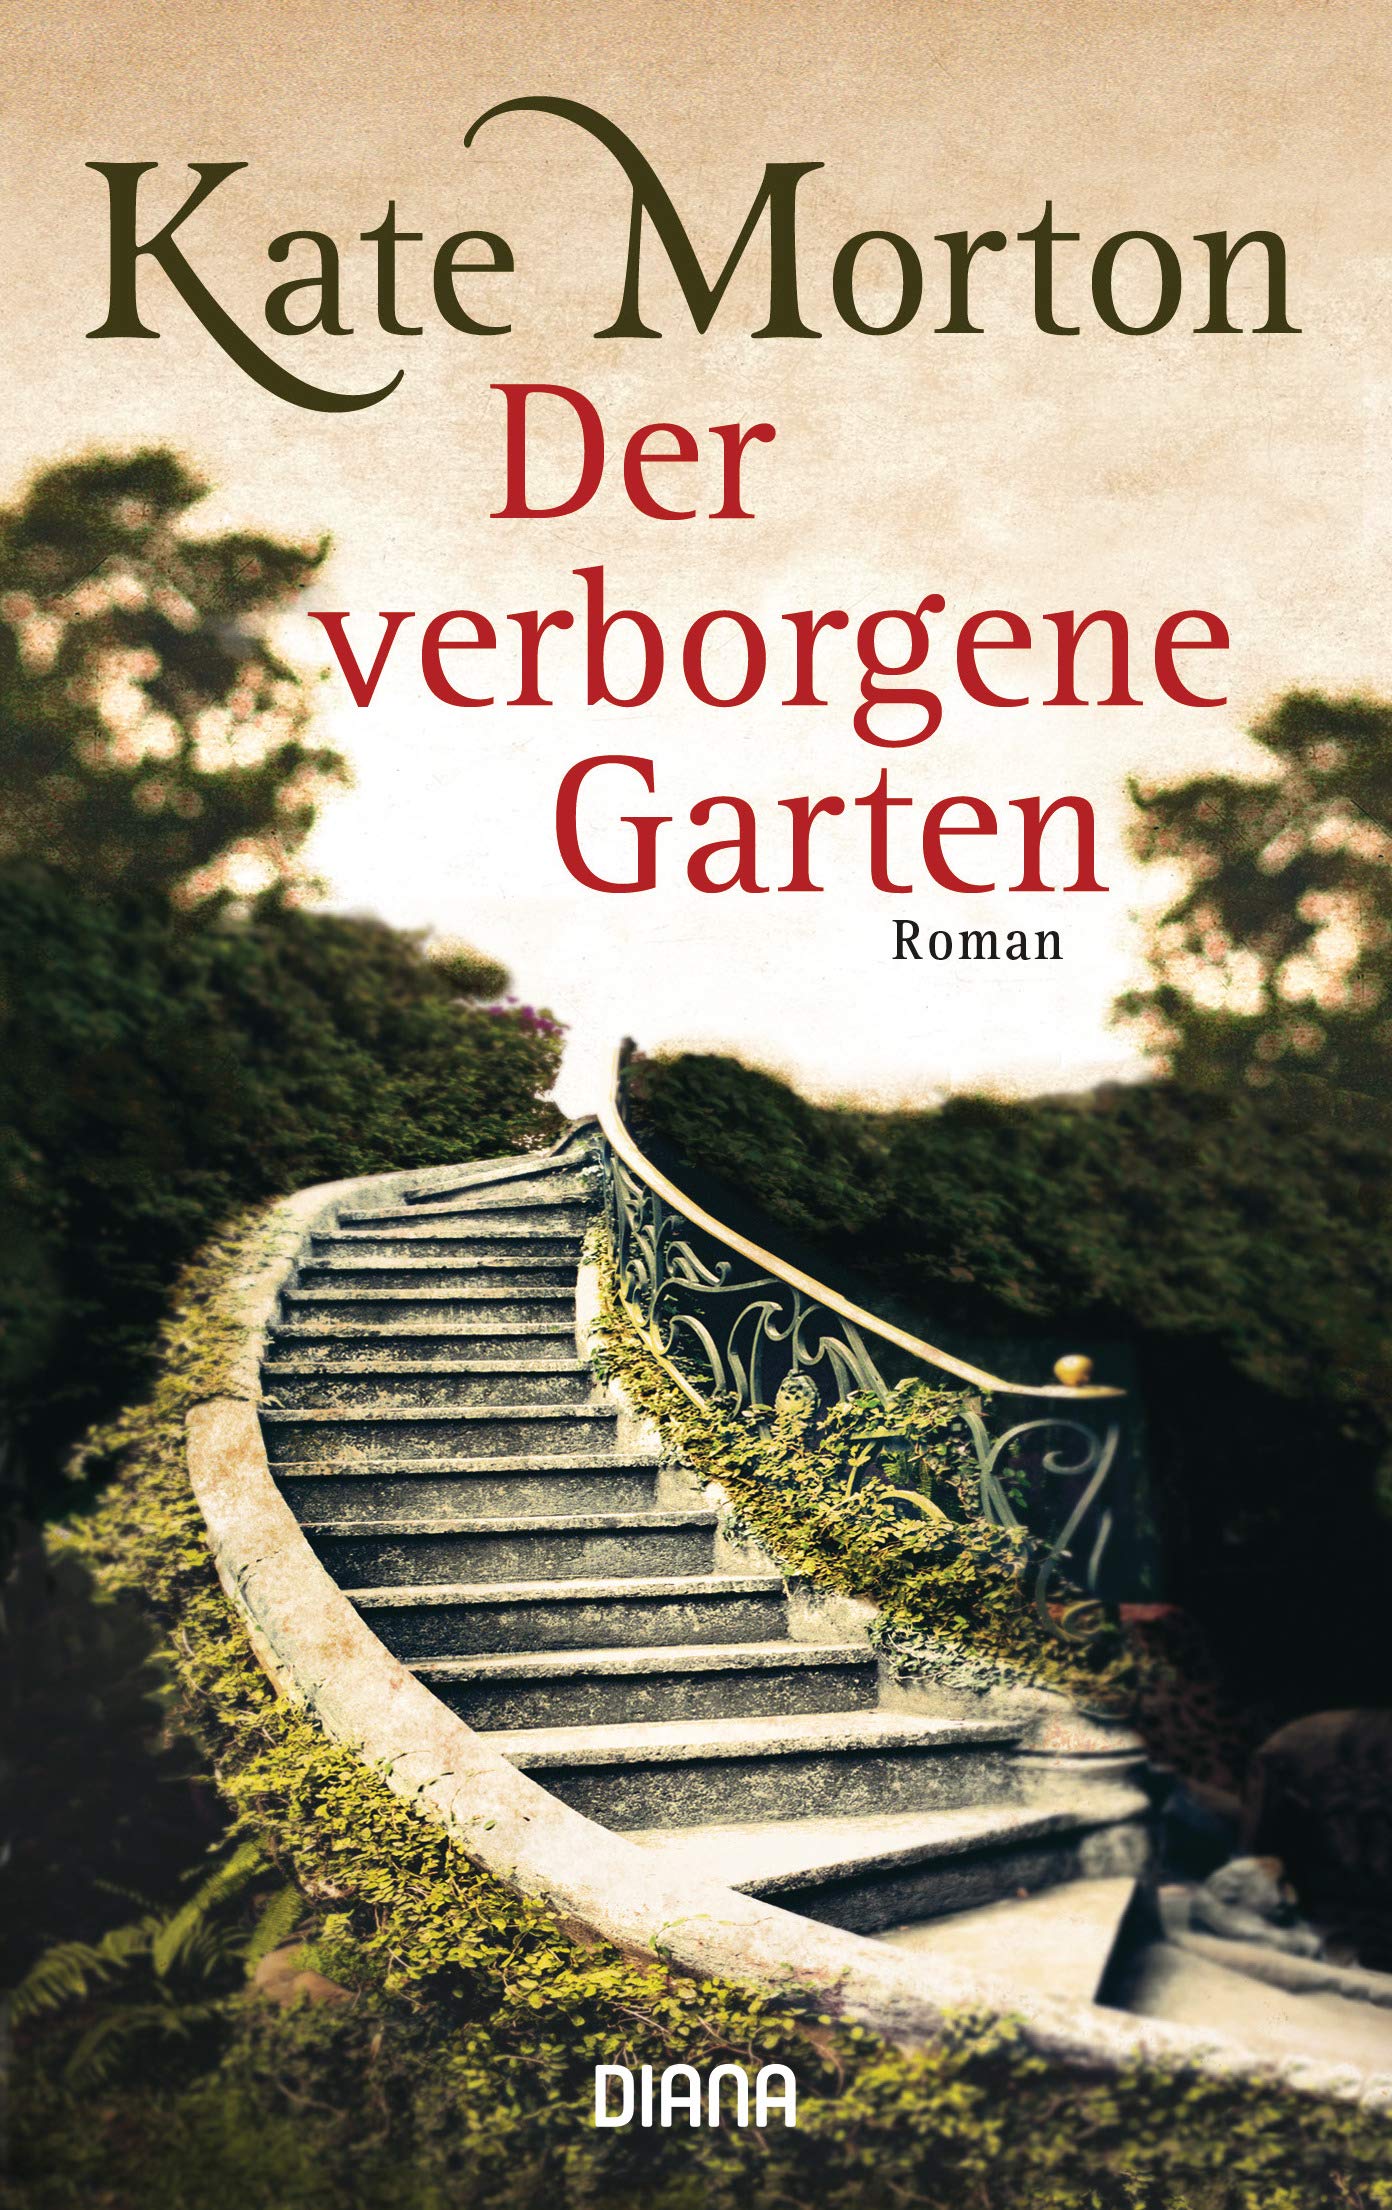 Der verborgene Garten by Charlotte Breuer, Kate Morton, Norbert Möllemann